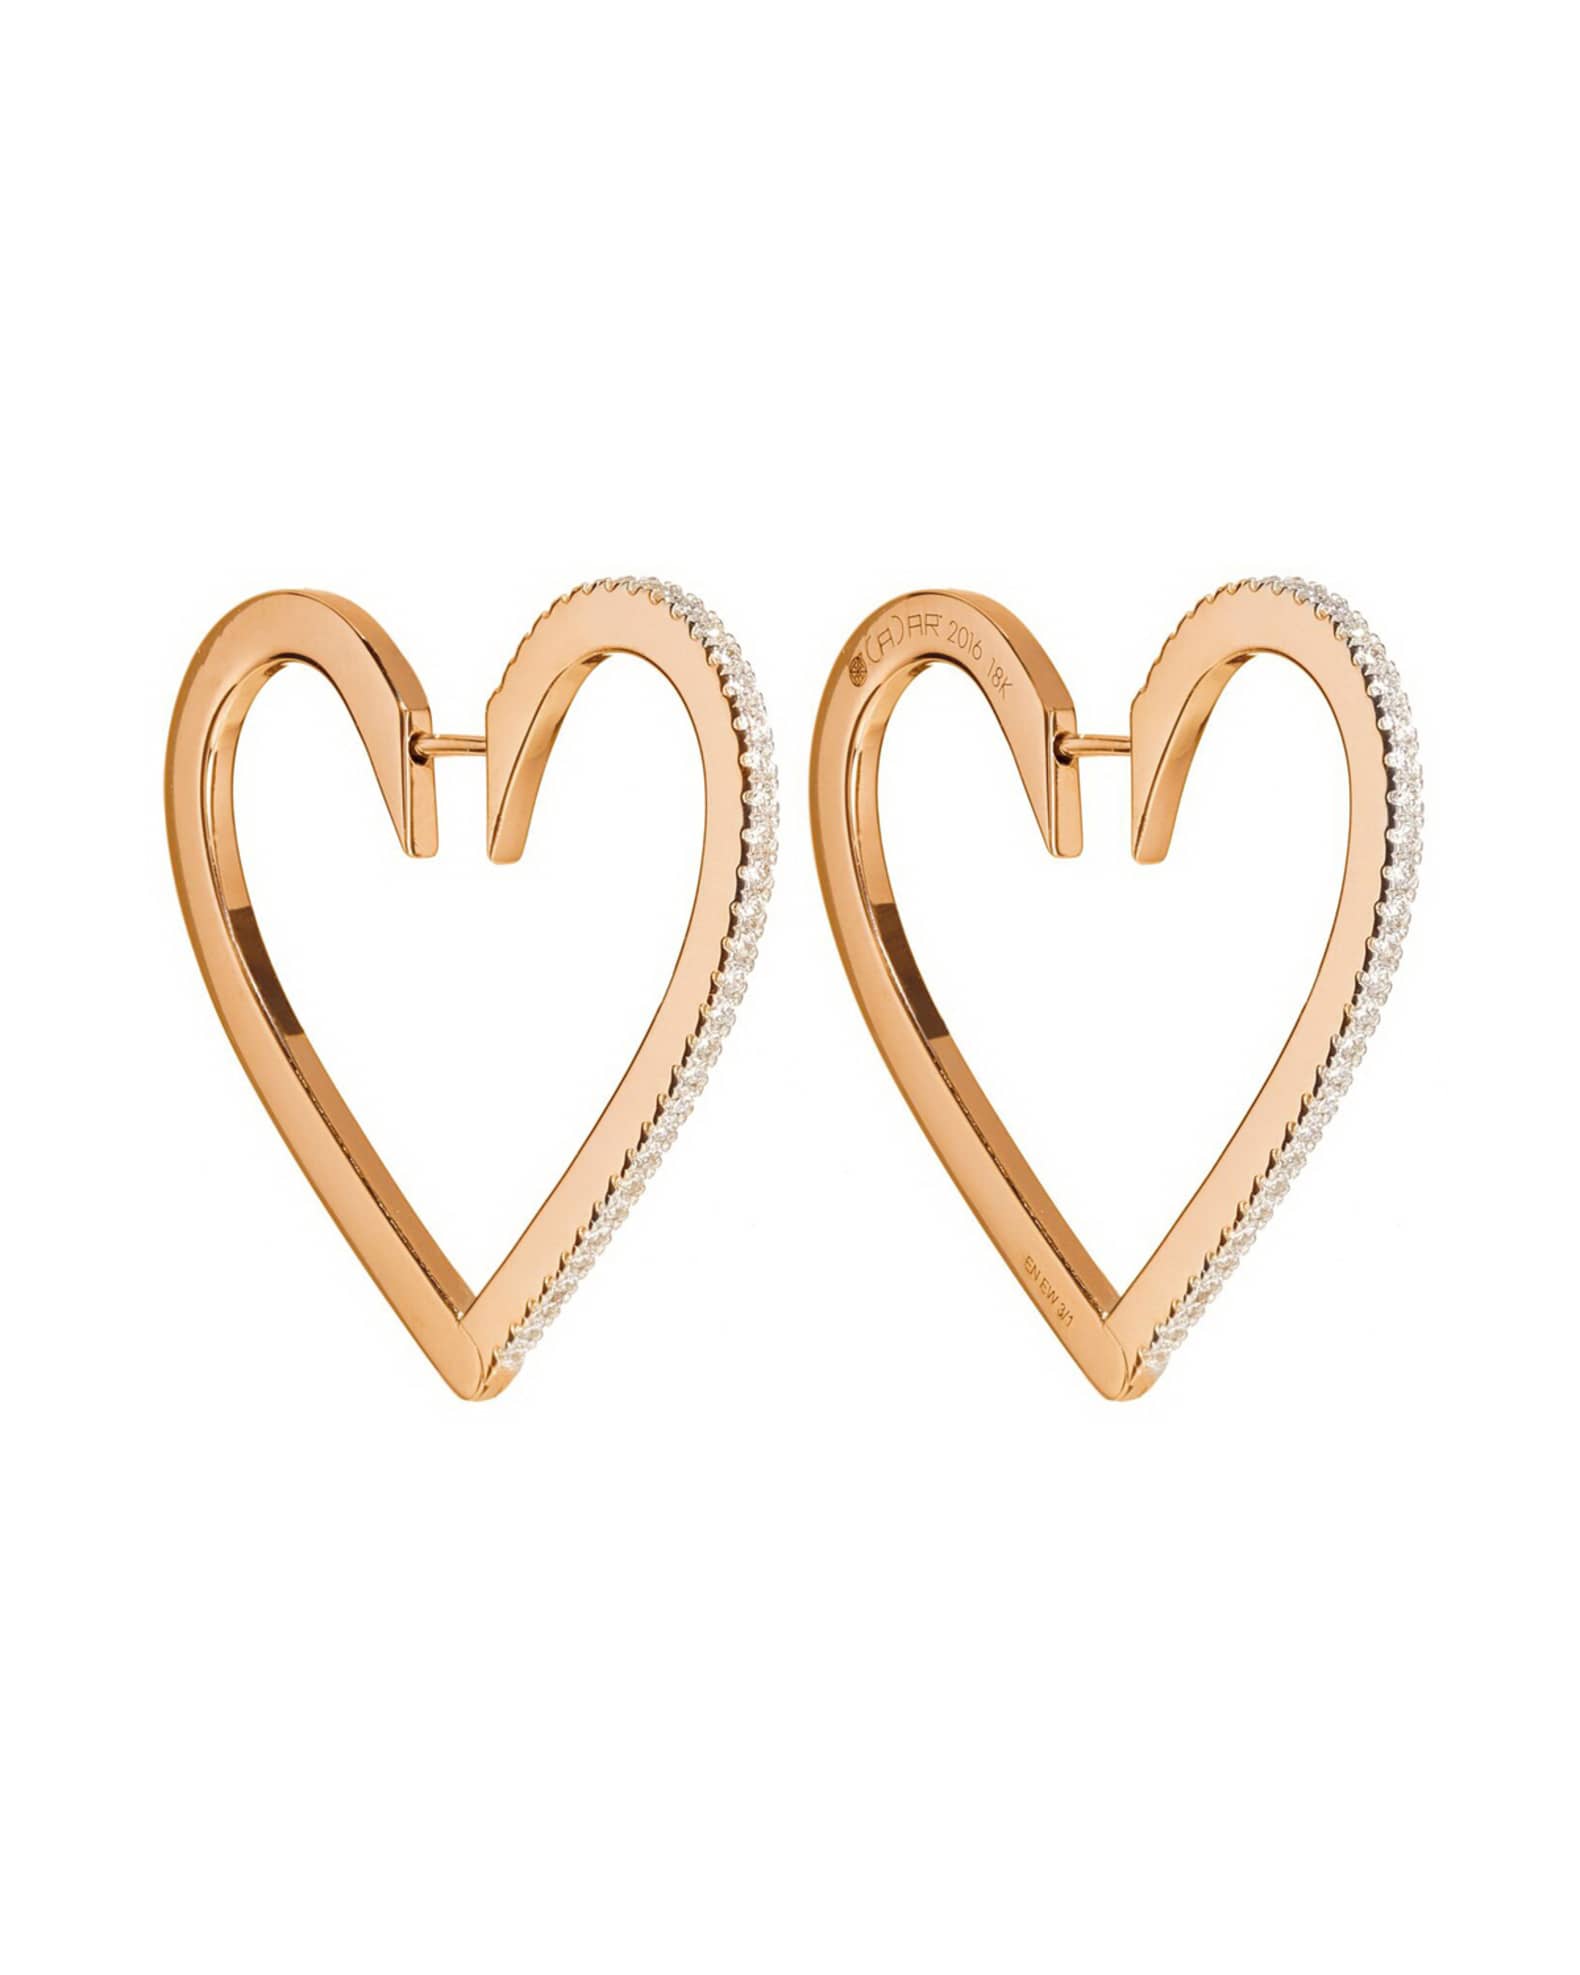 Decorative heart hoop earrings in Rose Gold